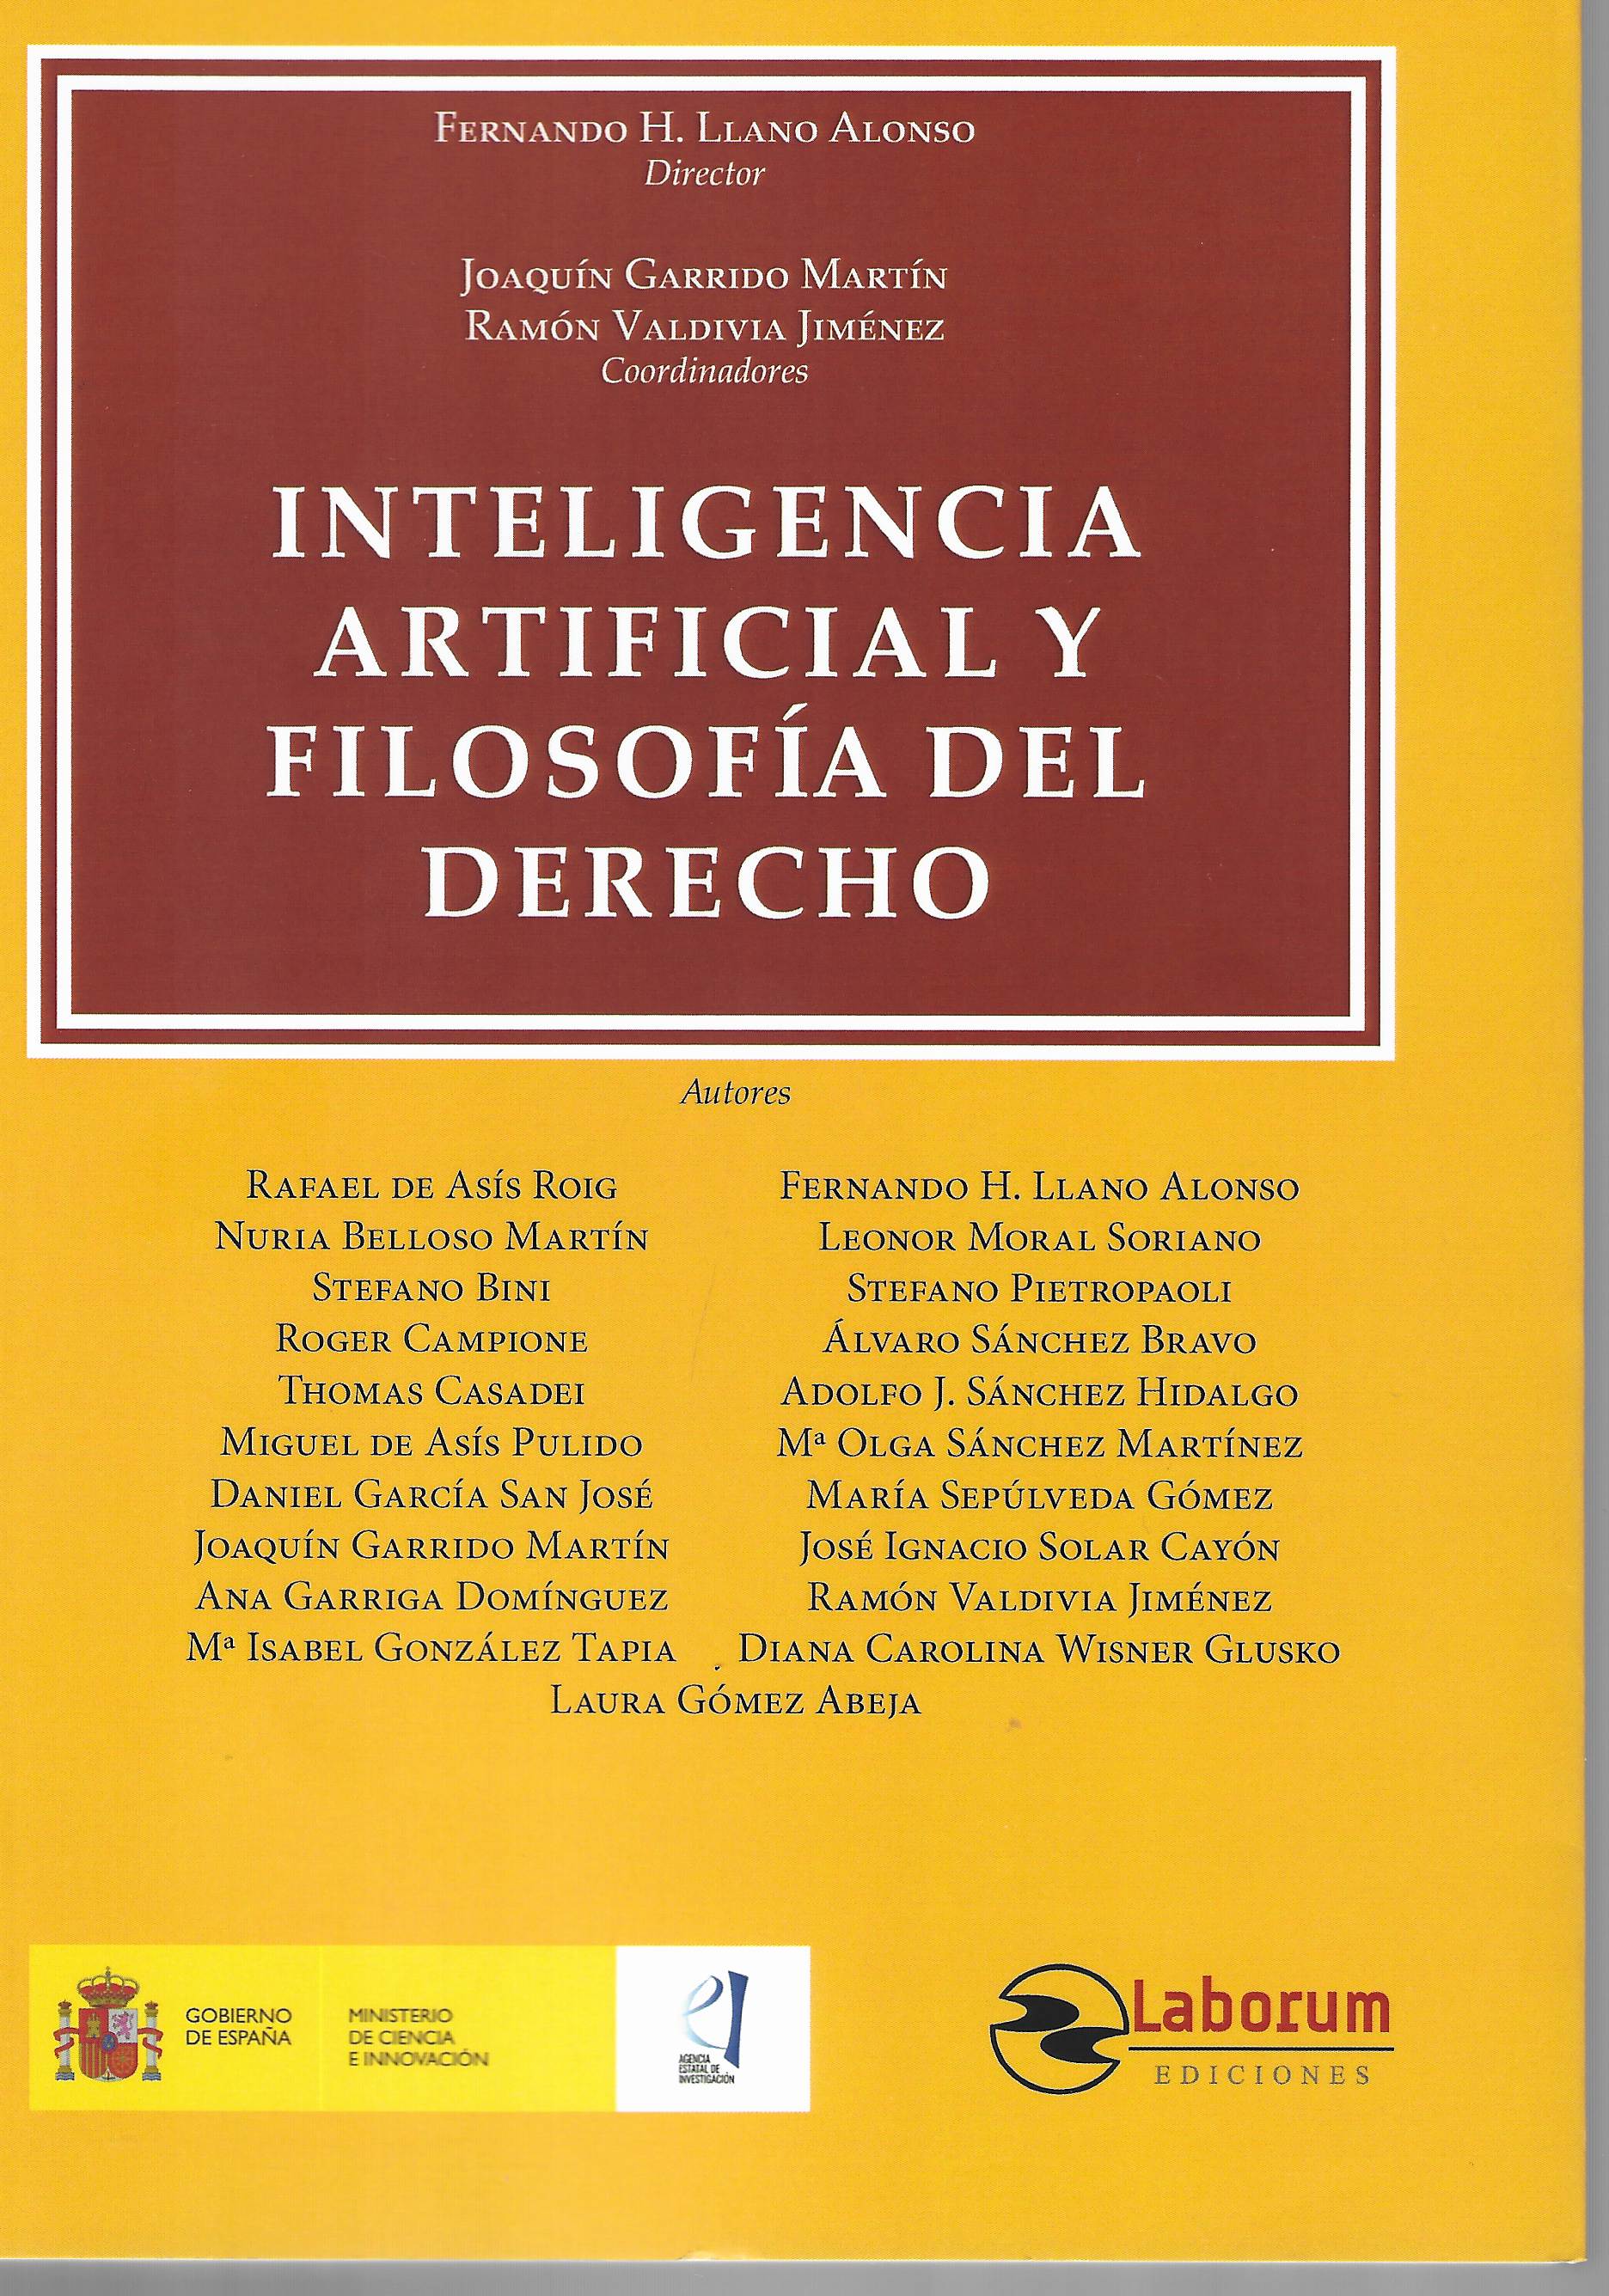 Imagen de portada del libro Inteligencia artificial y Filosofía del derecho